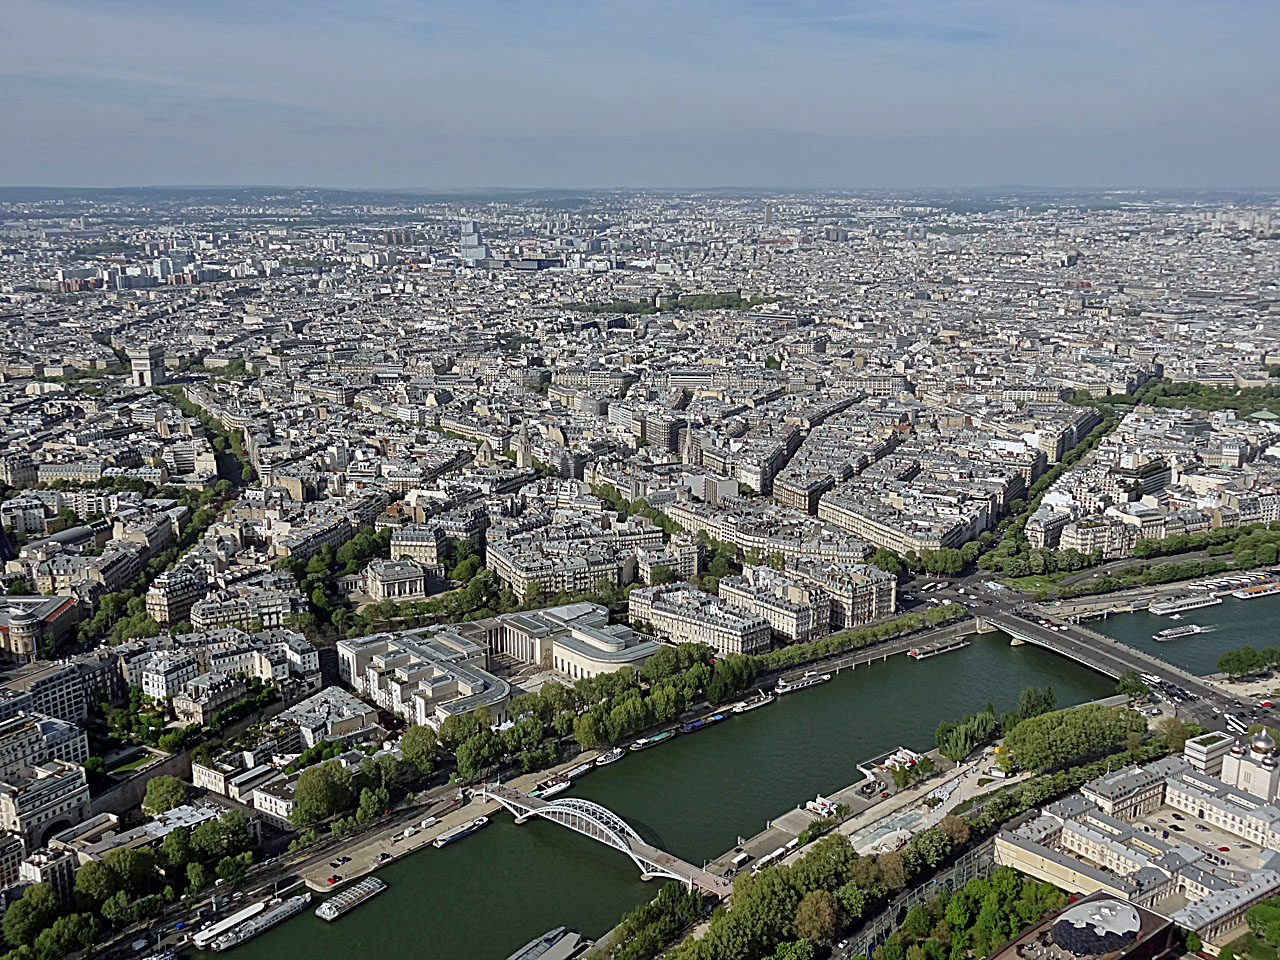 Le palais de Tokyo et la Seine, l'Arc deTriomphe, les Champs-Elysées, et au fond, le parc Monceau vue du 3e étage.